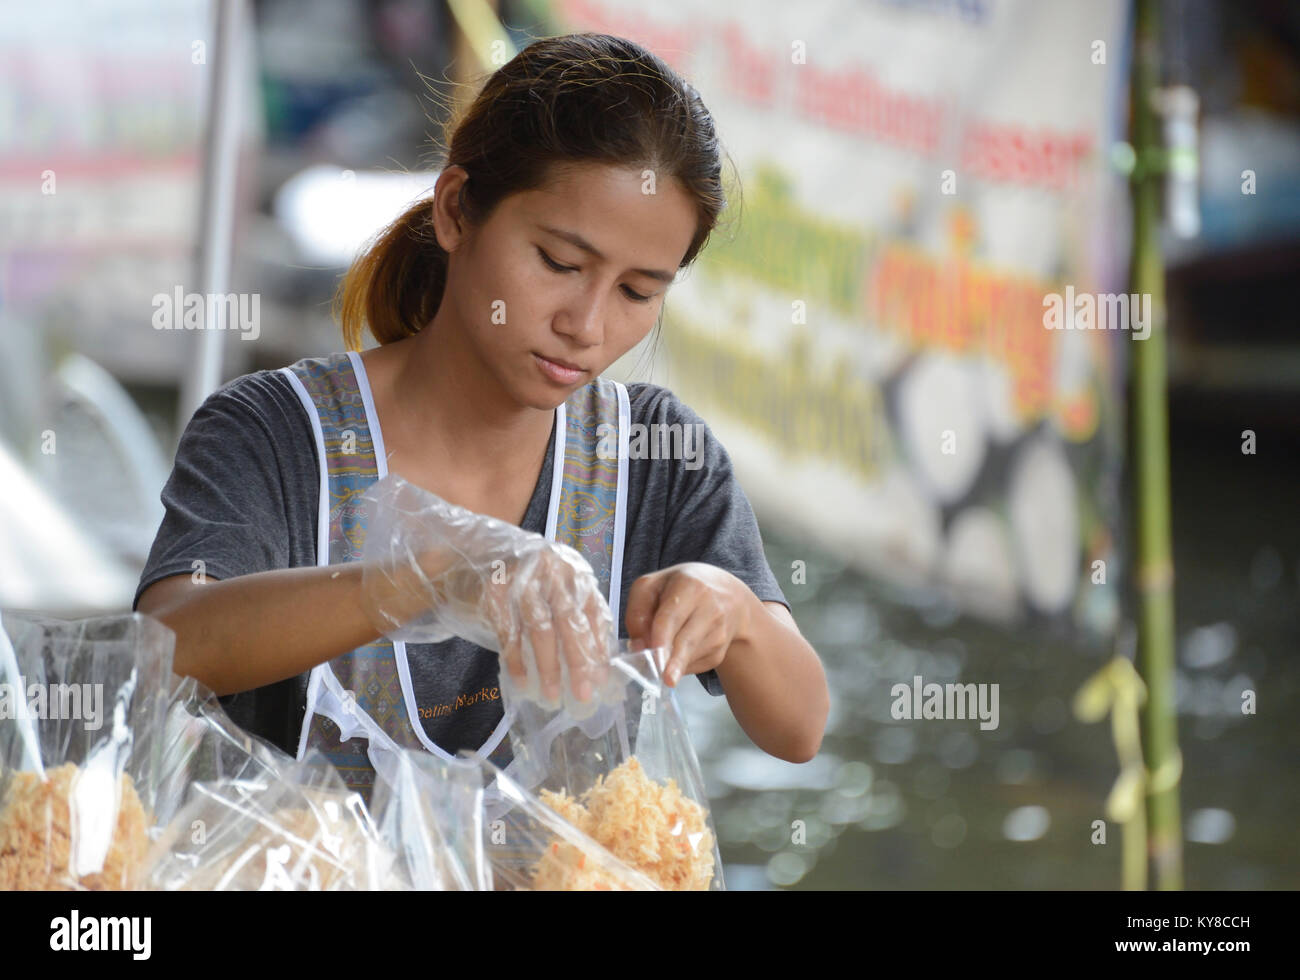 Food stall at Taling Chan floating market, Bangkok, Thailand Stock Photo